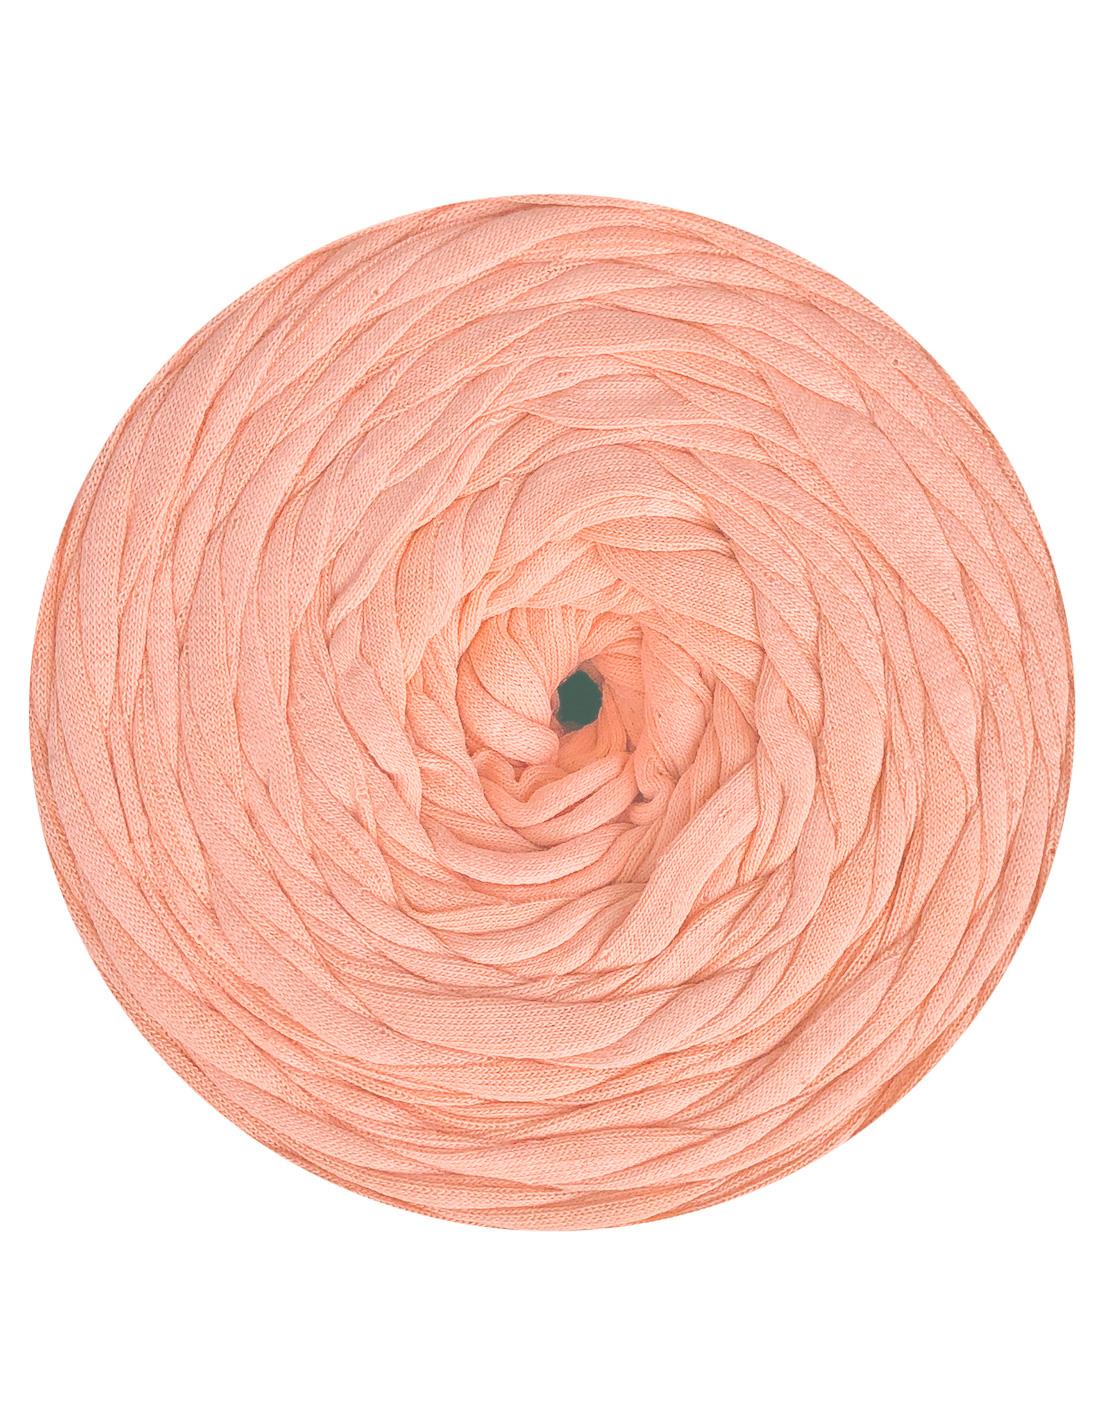 Peachy pink t-shirt yarn by Rescue Yarn (100-120m)